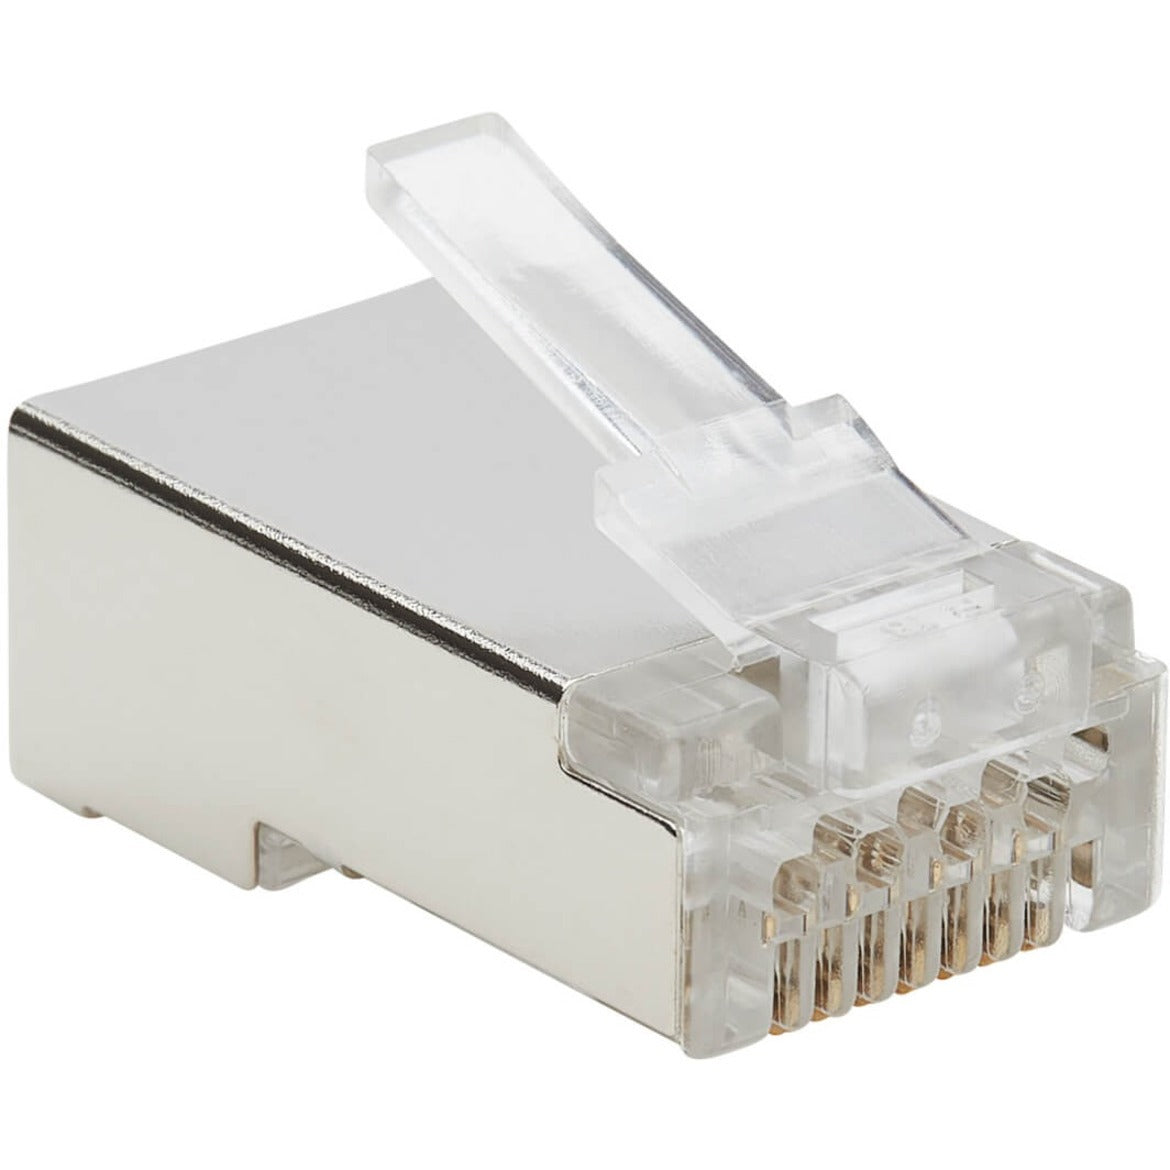 تريب لايت N232-100-FTP Cat6 RJ45 تمرير خلال FTP مقبس مودولار 100 حزمة تقاطع وحماية EMI/RF  العلامة التجارية: تريب لايت